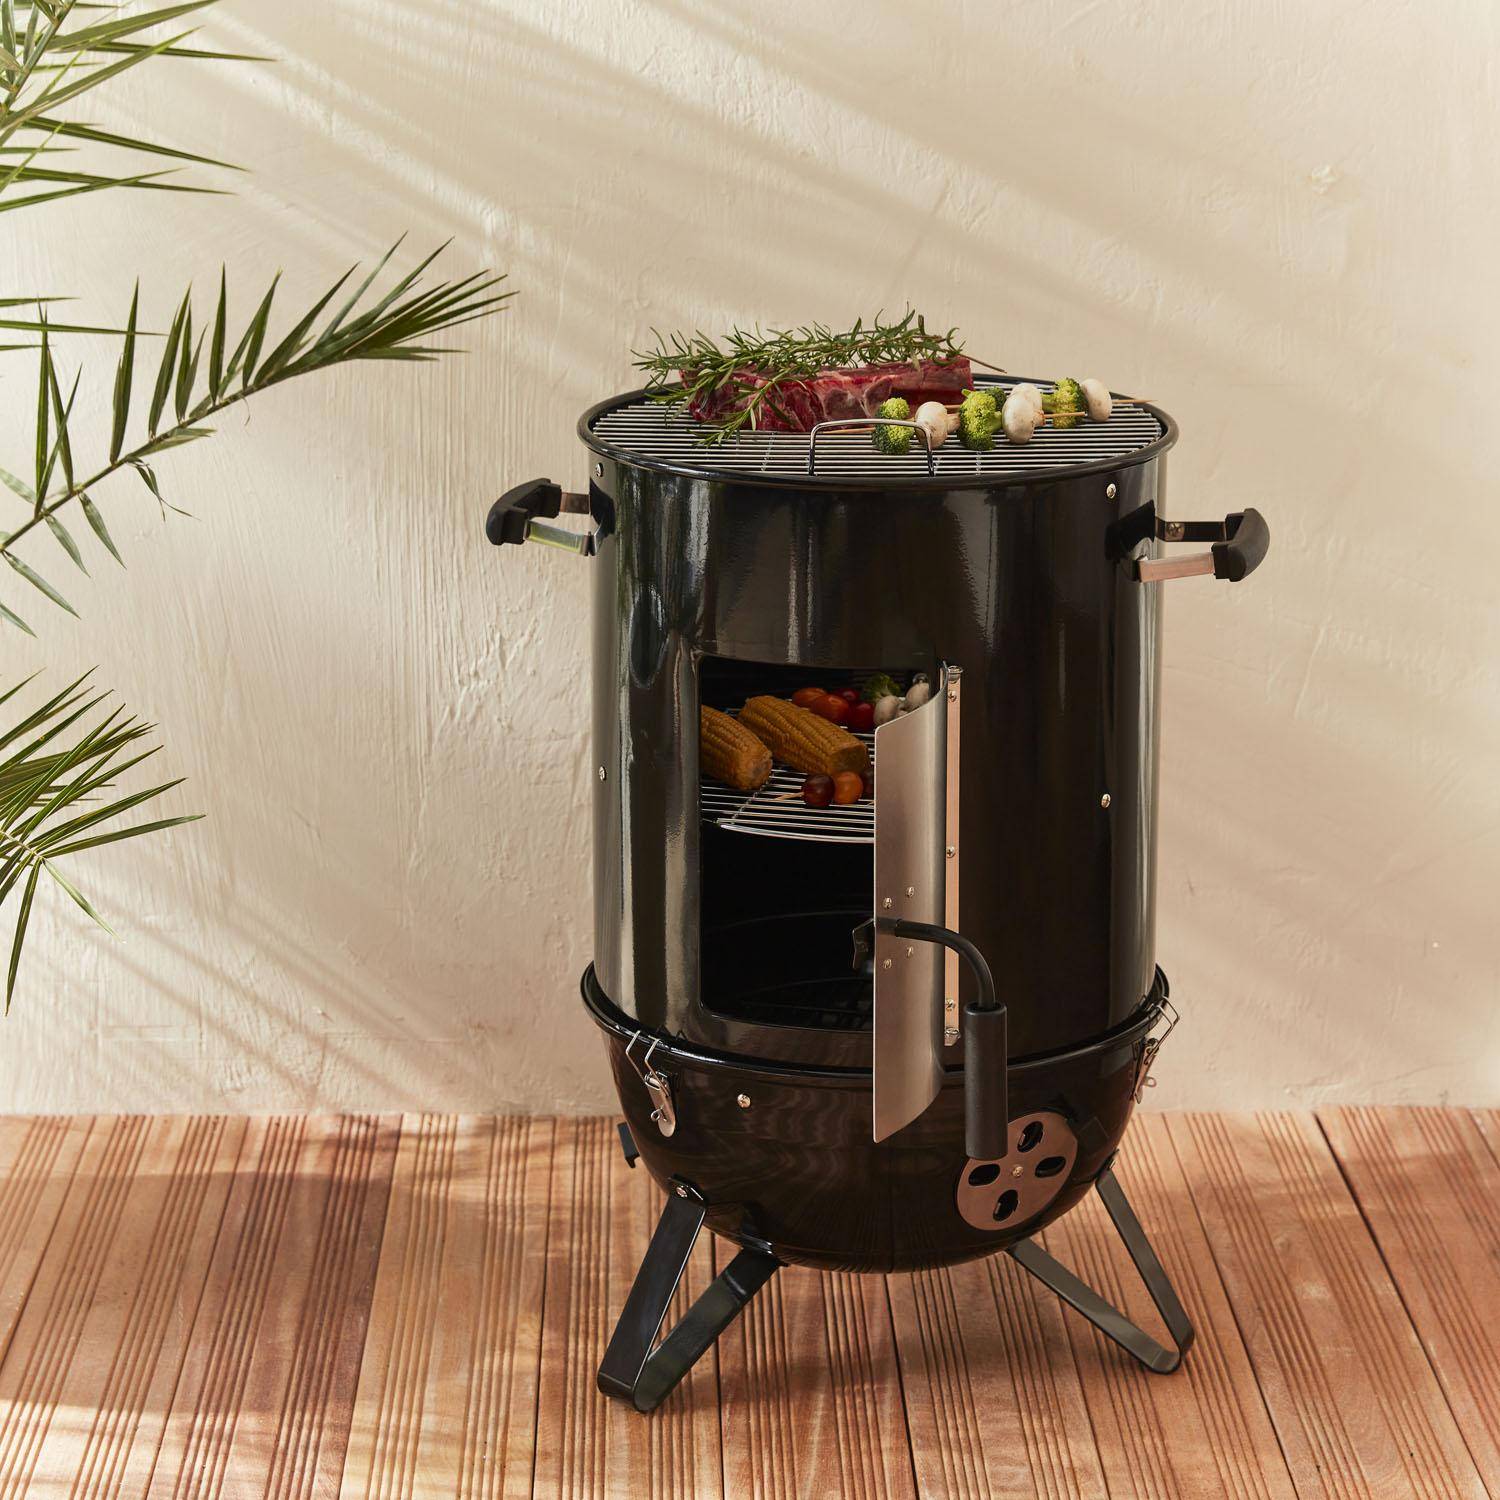 Houtskoolbarbecue - Jacques - barbecue met beluchters, rookoven, grill, rookdoos, zwart Photo2